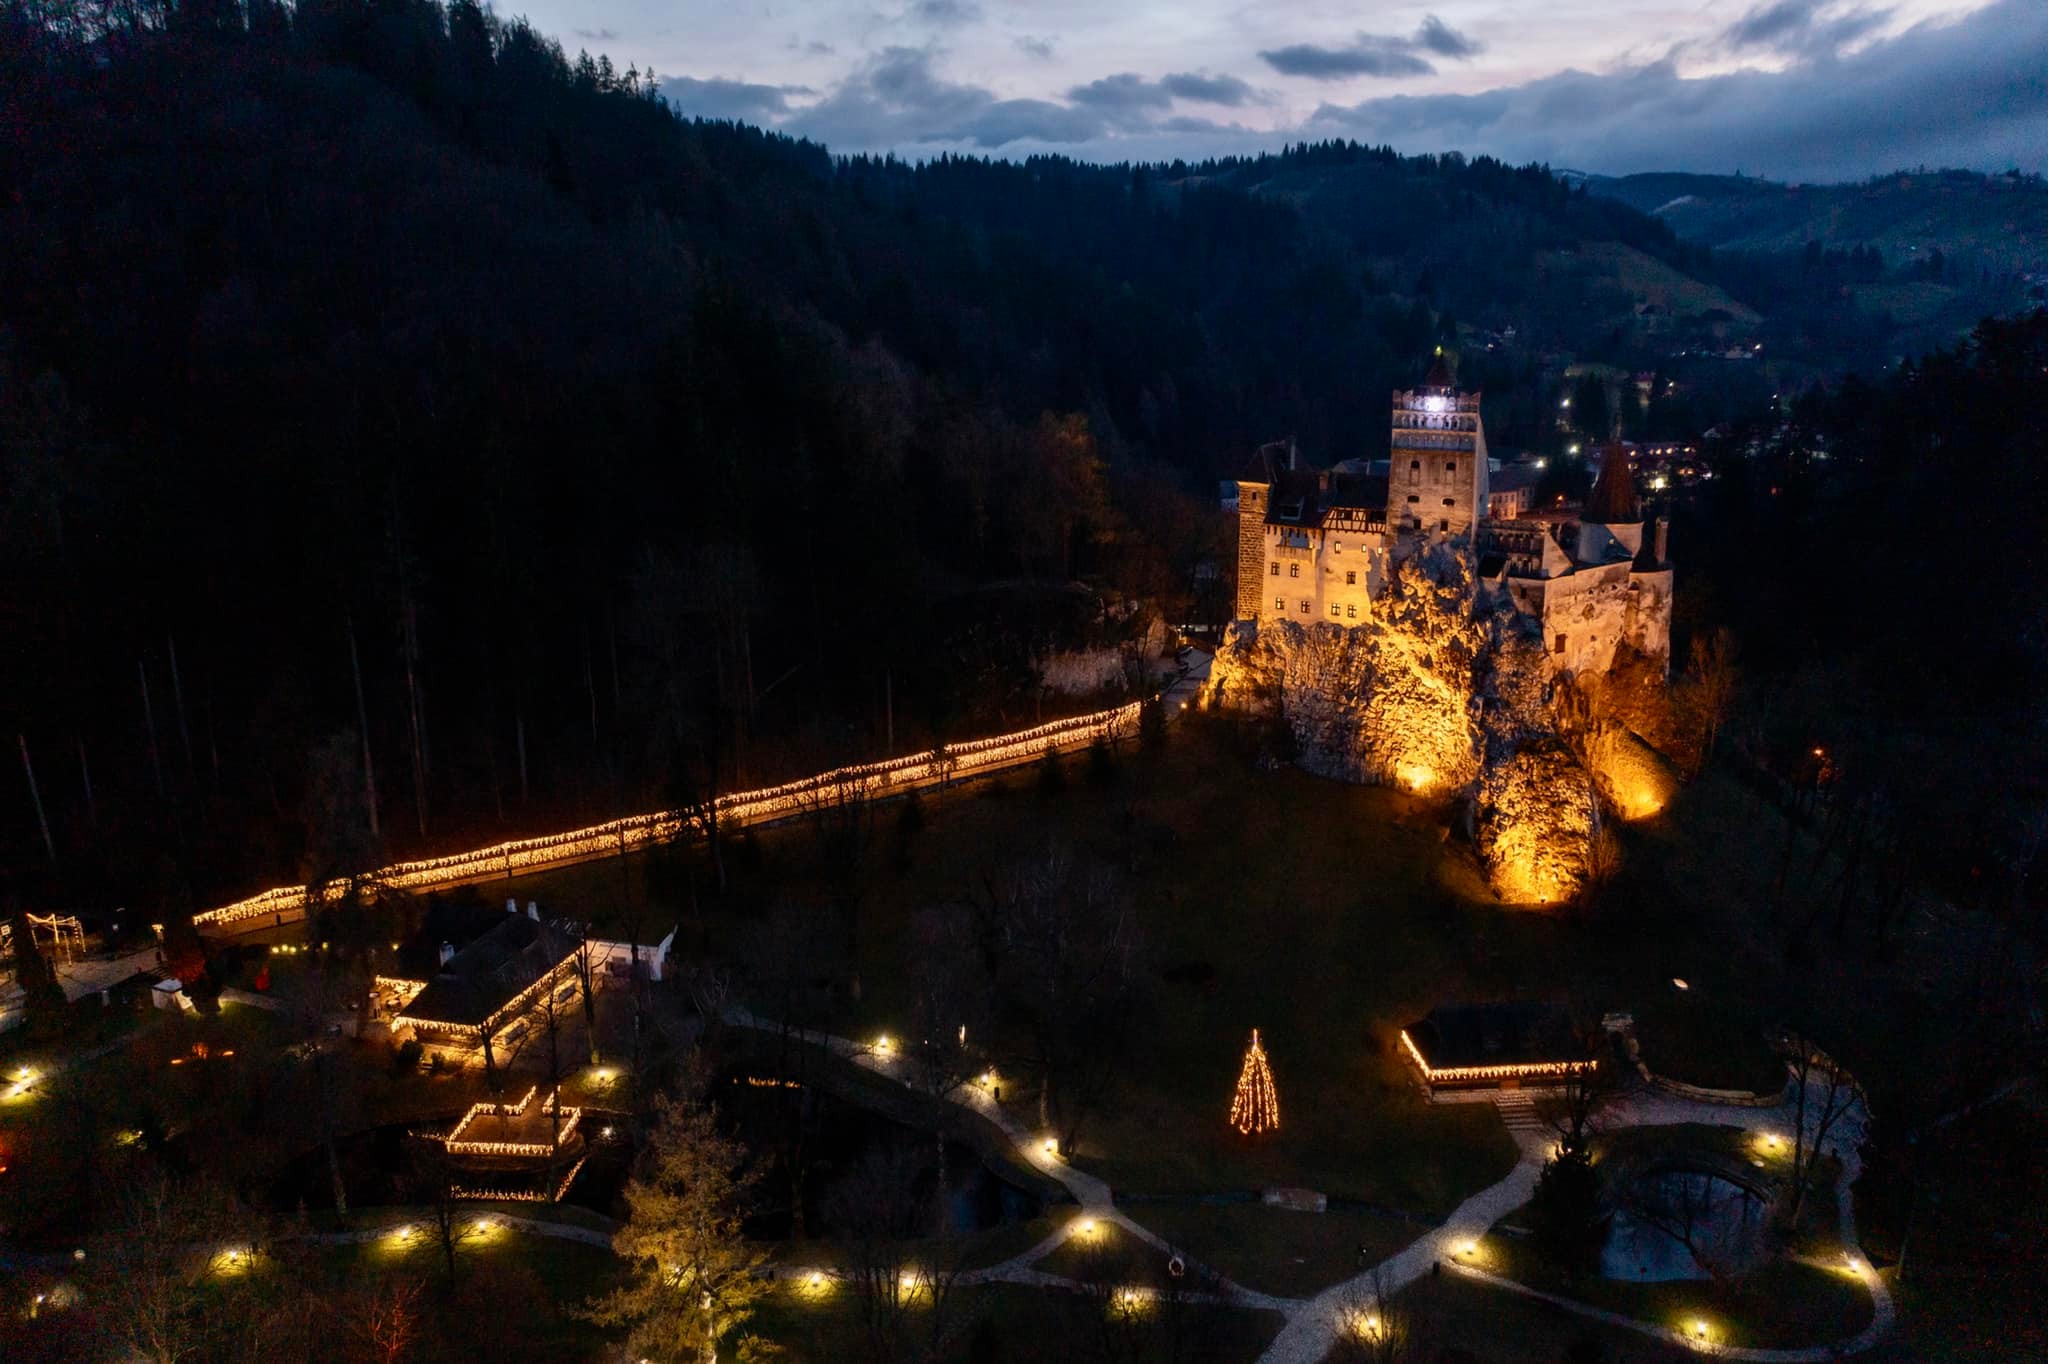 Castelul Törzburg | Bran